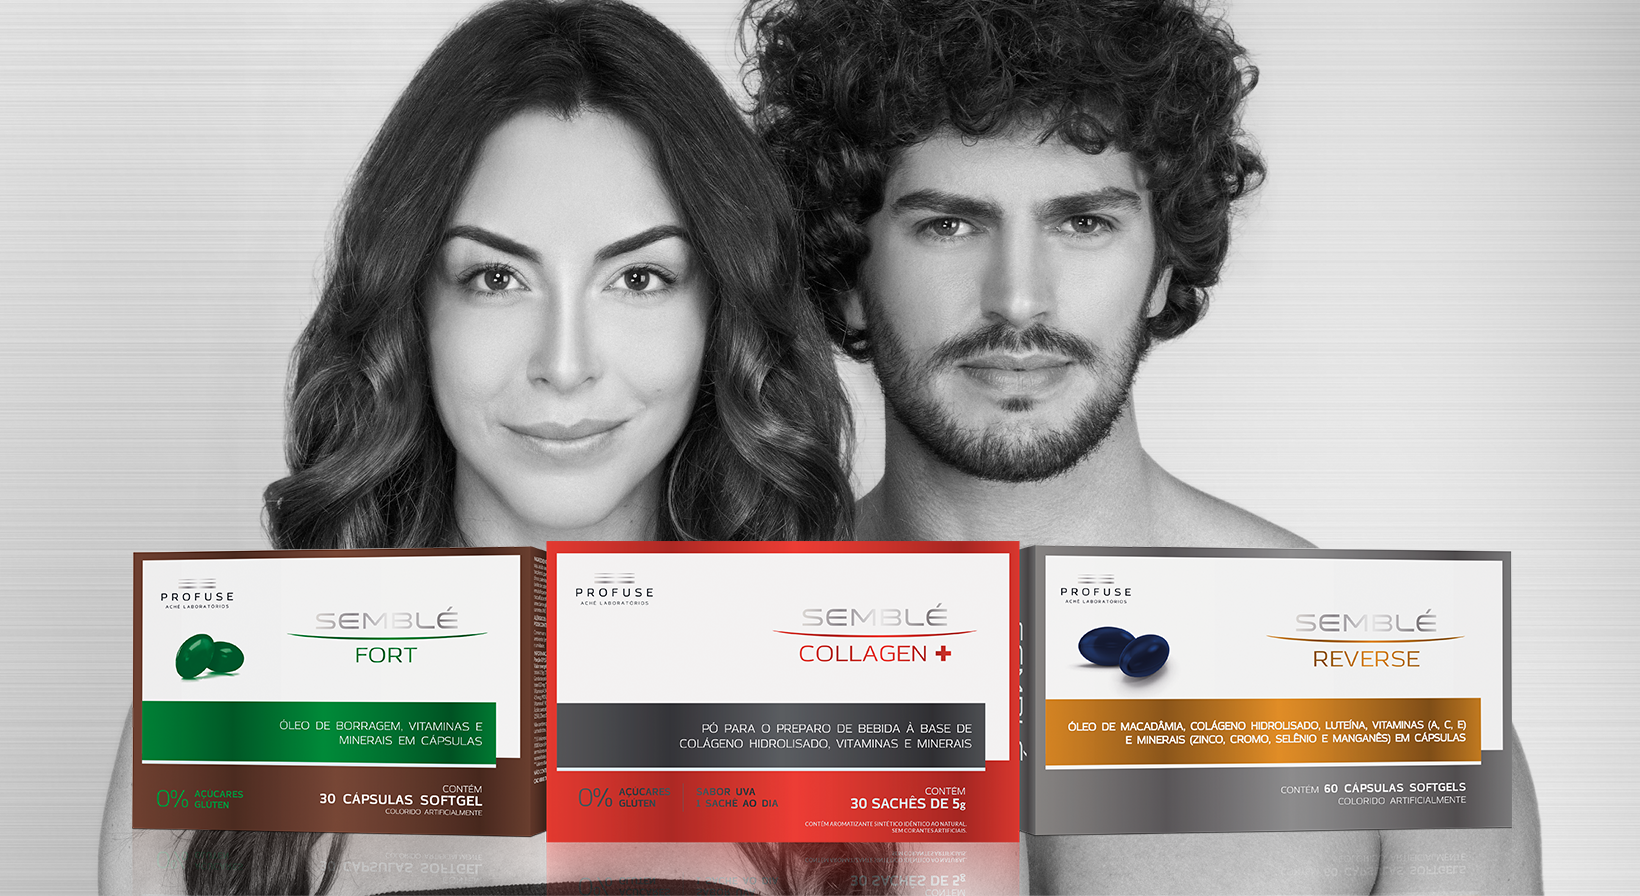 Imagem mostra os produtos Semblé Fort, Semblé Collagen+ e Semblé Reverse, e ao fundo um homem e uma mulher